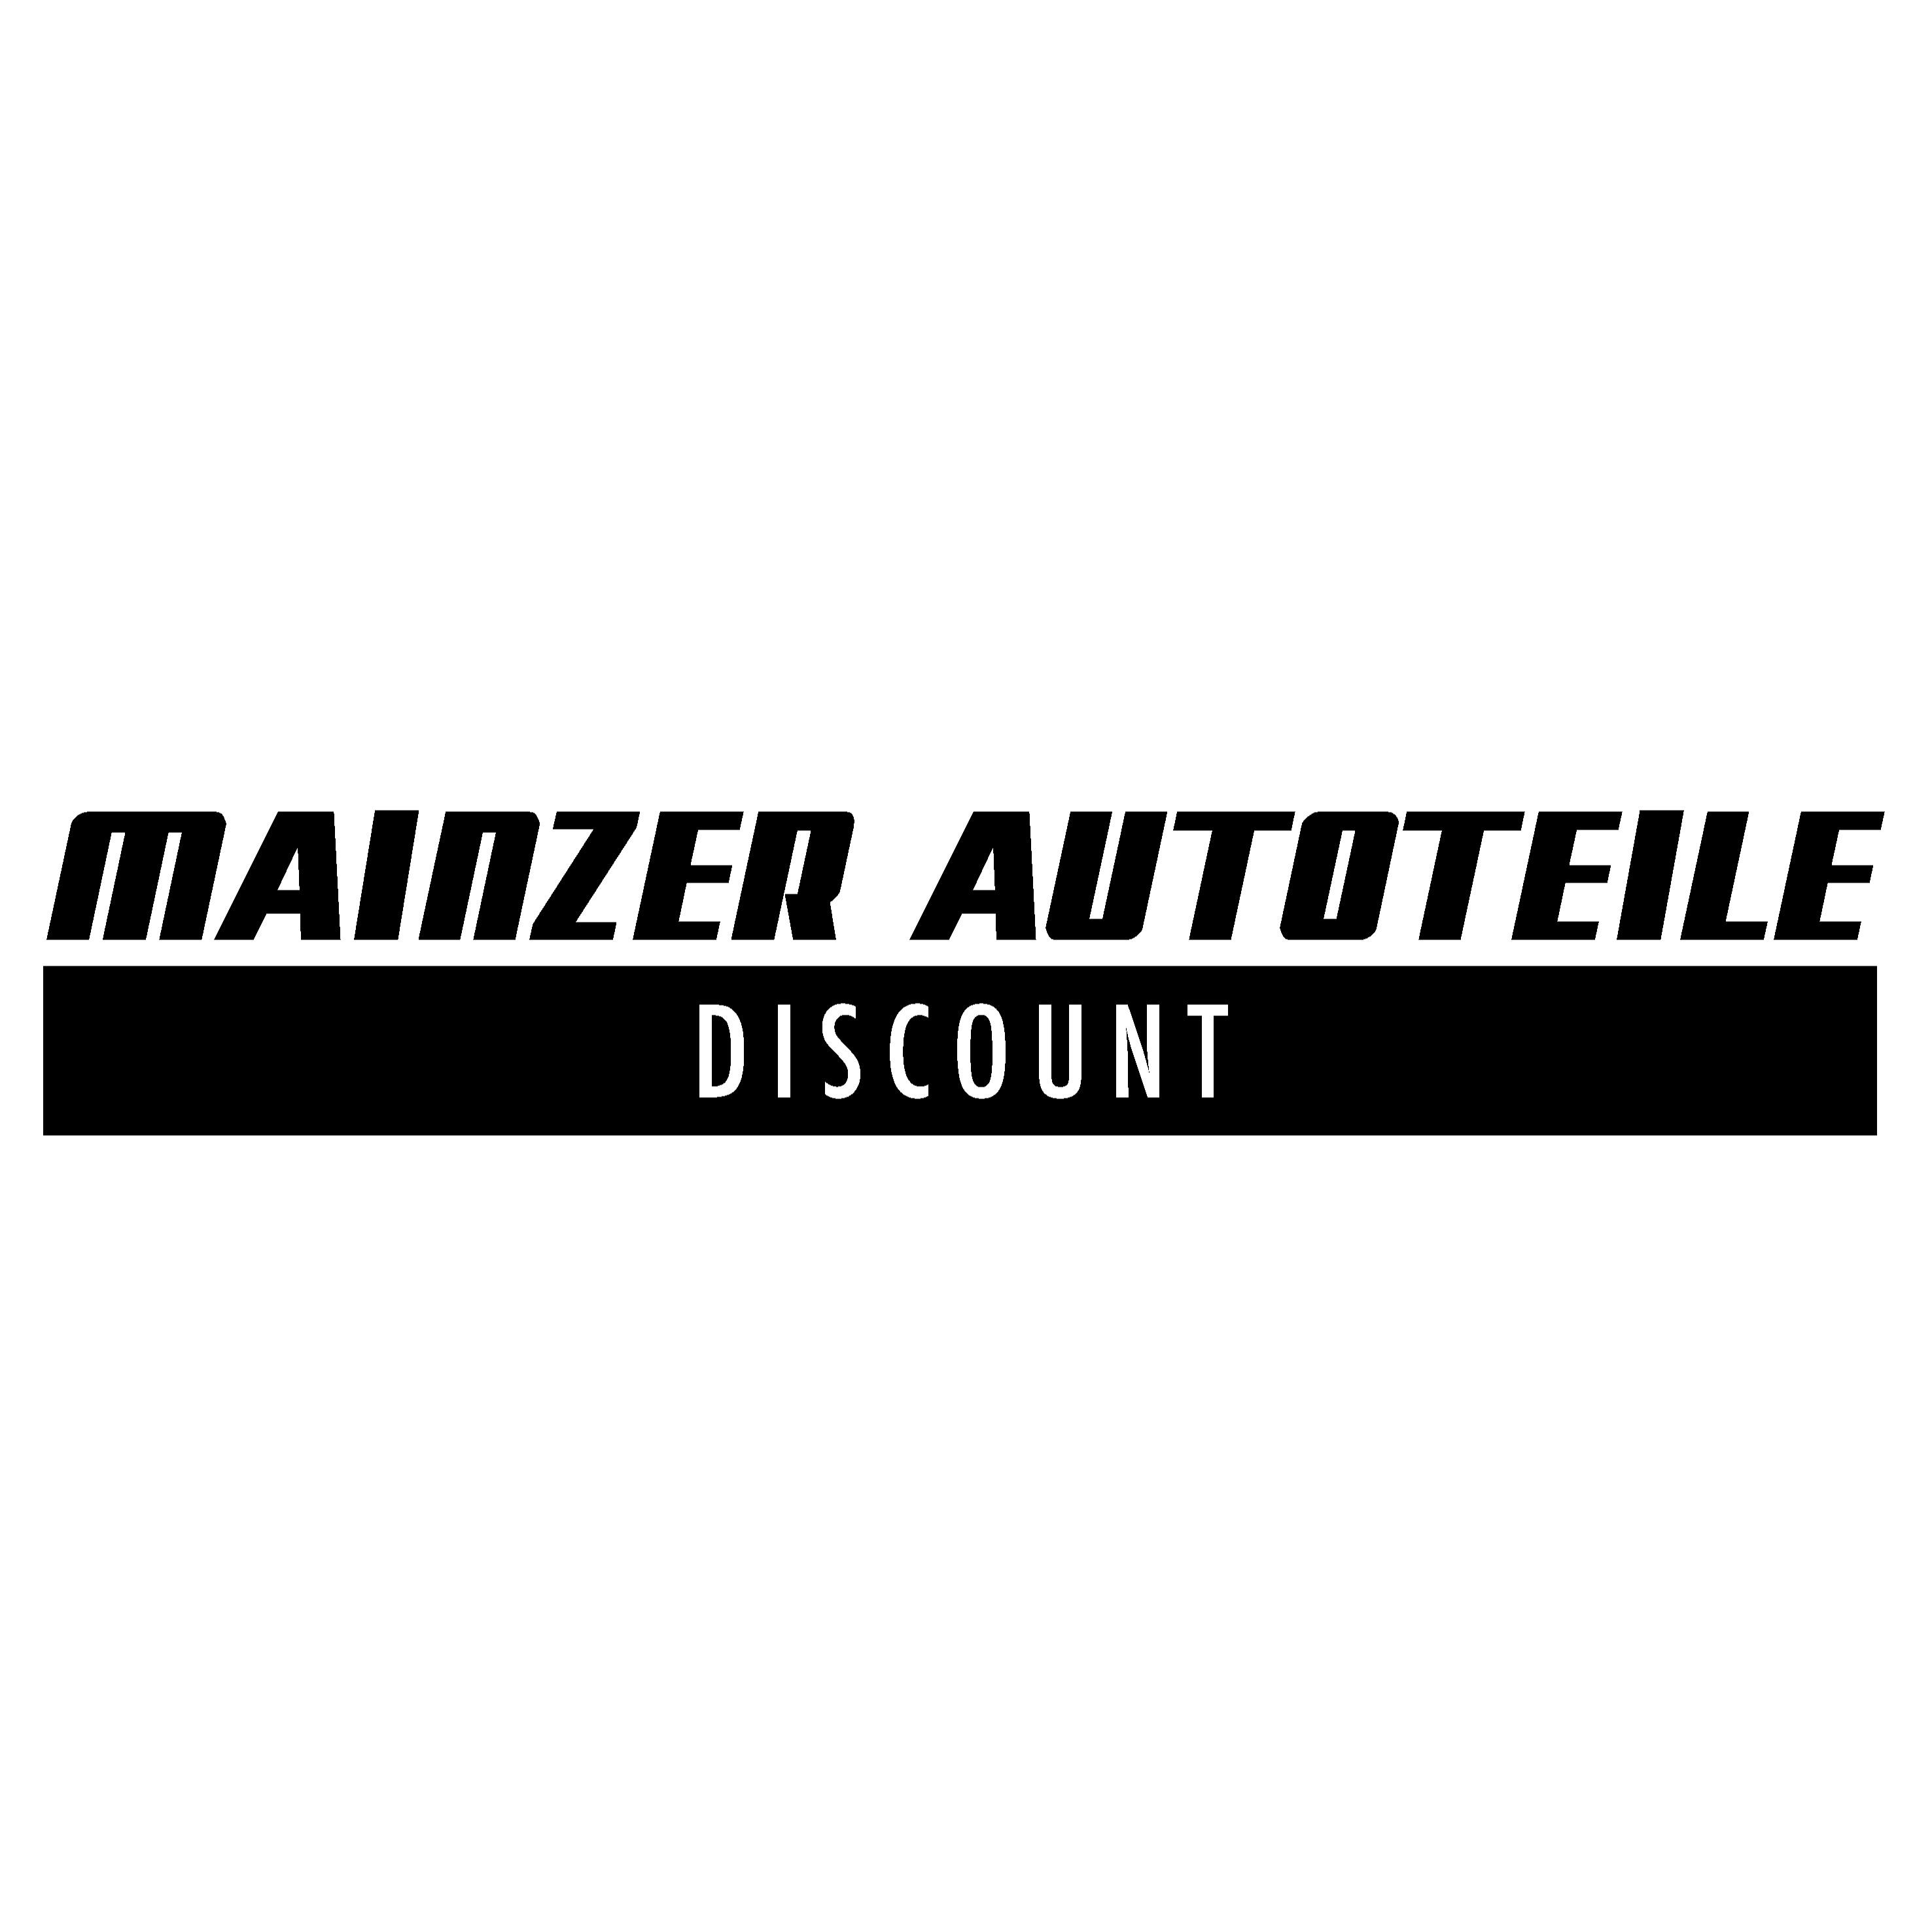 Mainzer Autoteile Discount in Mainz - Logo